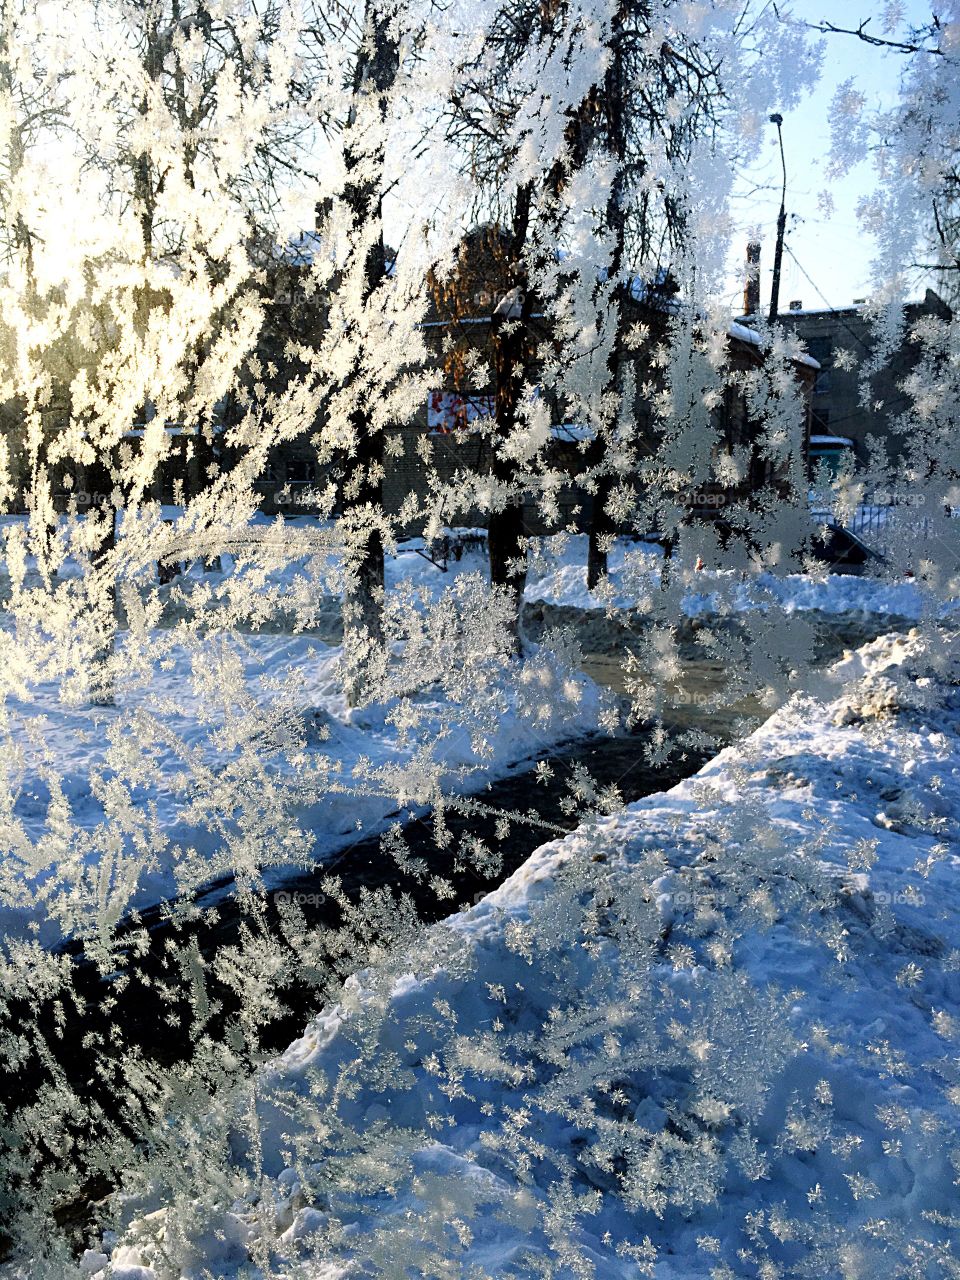 frosty patterns on the glass